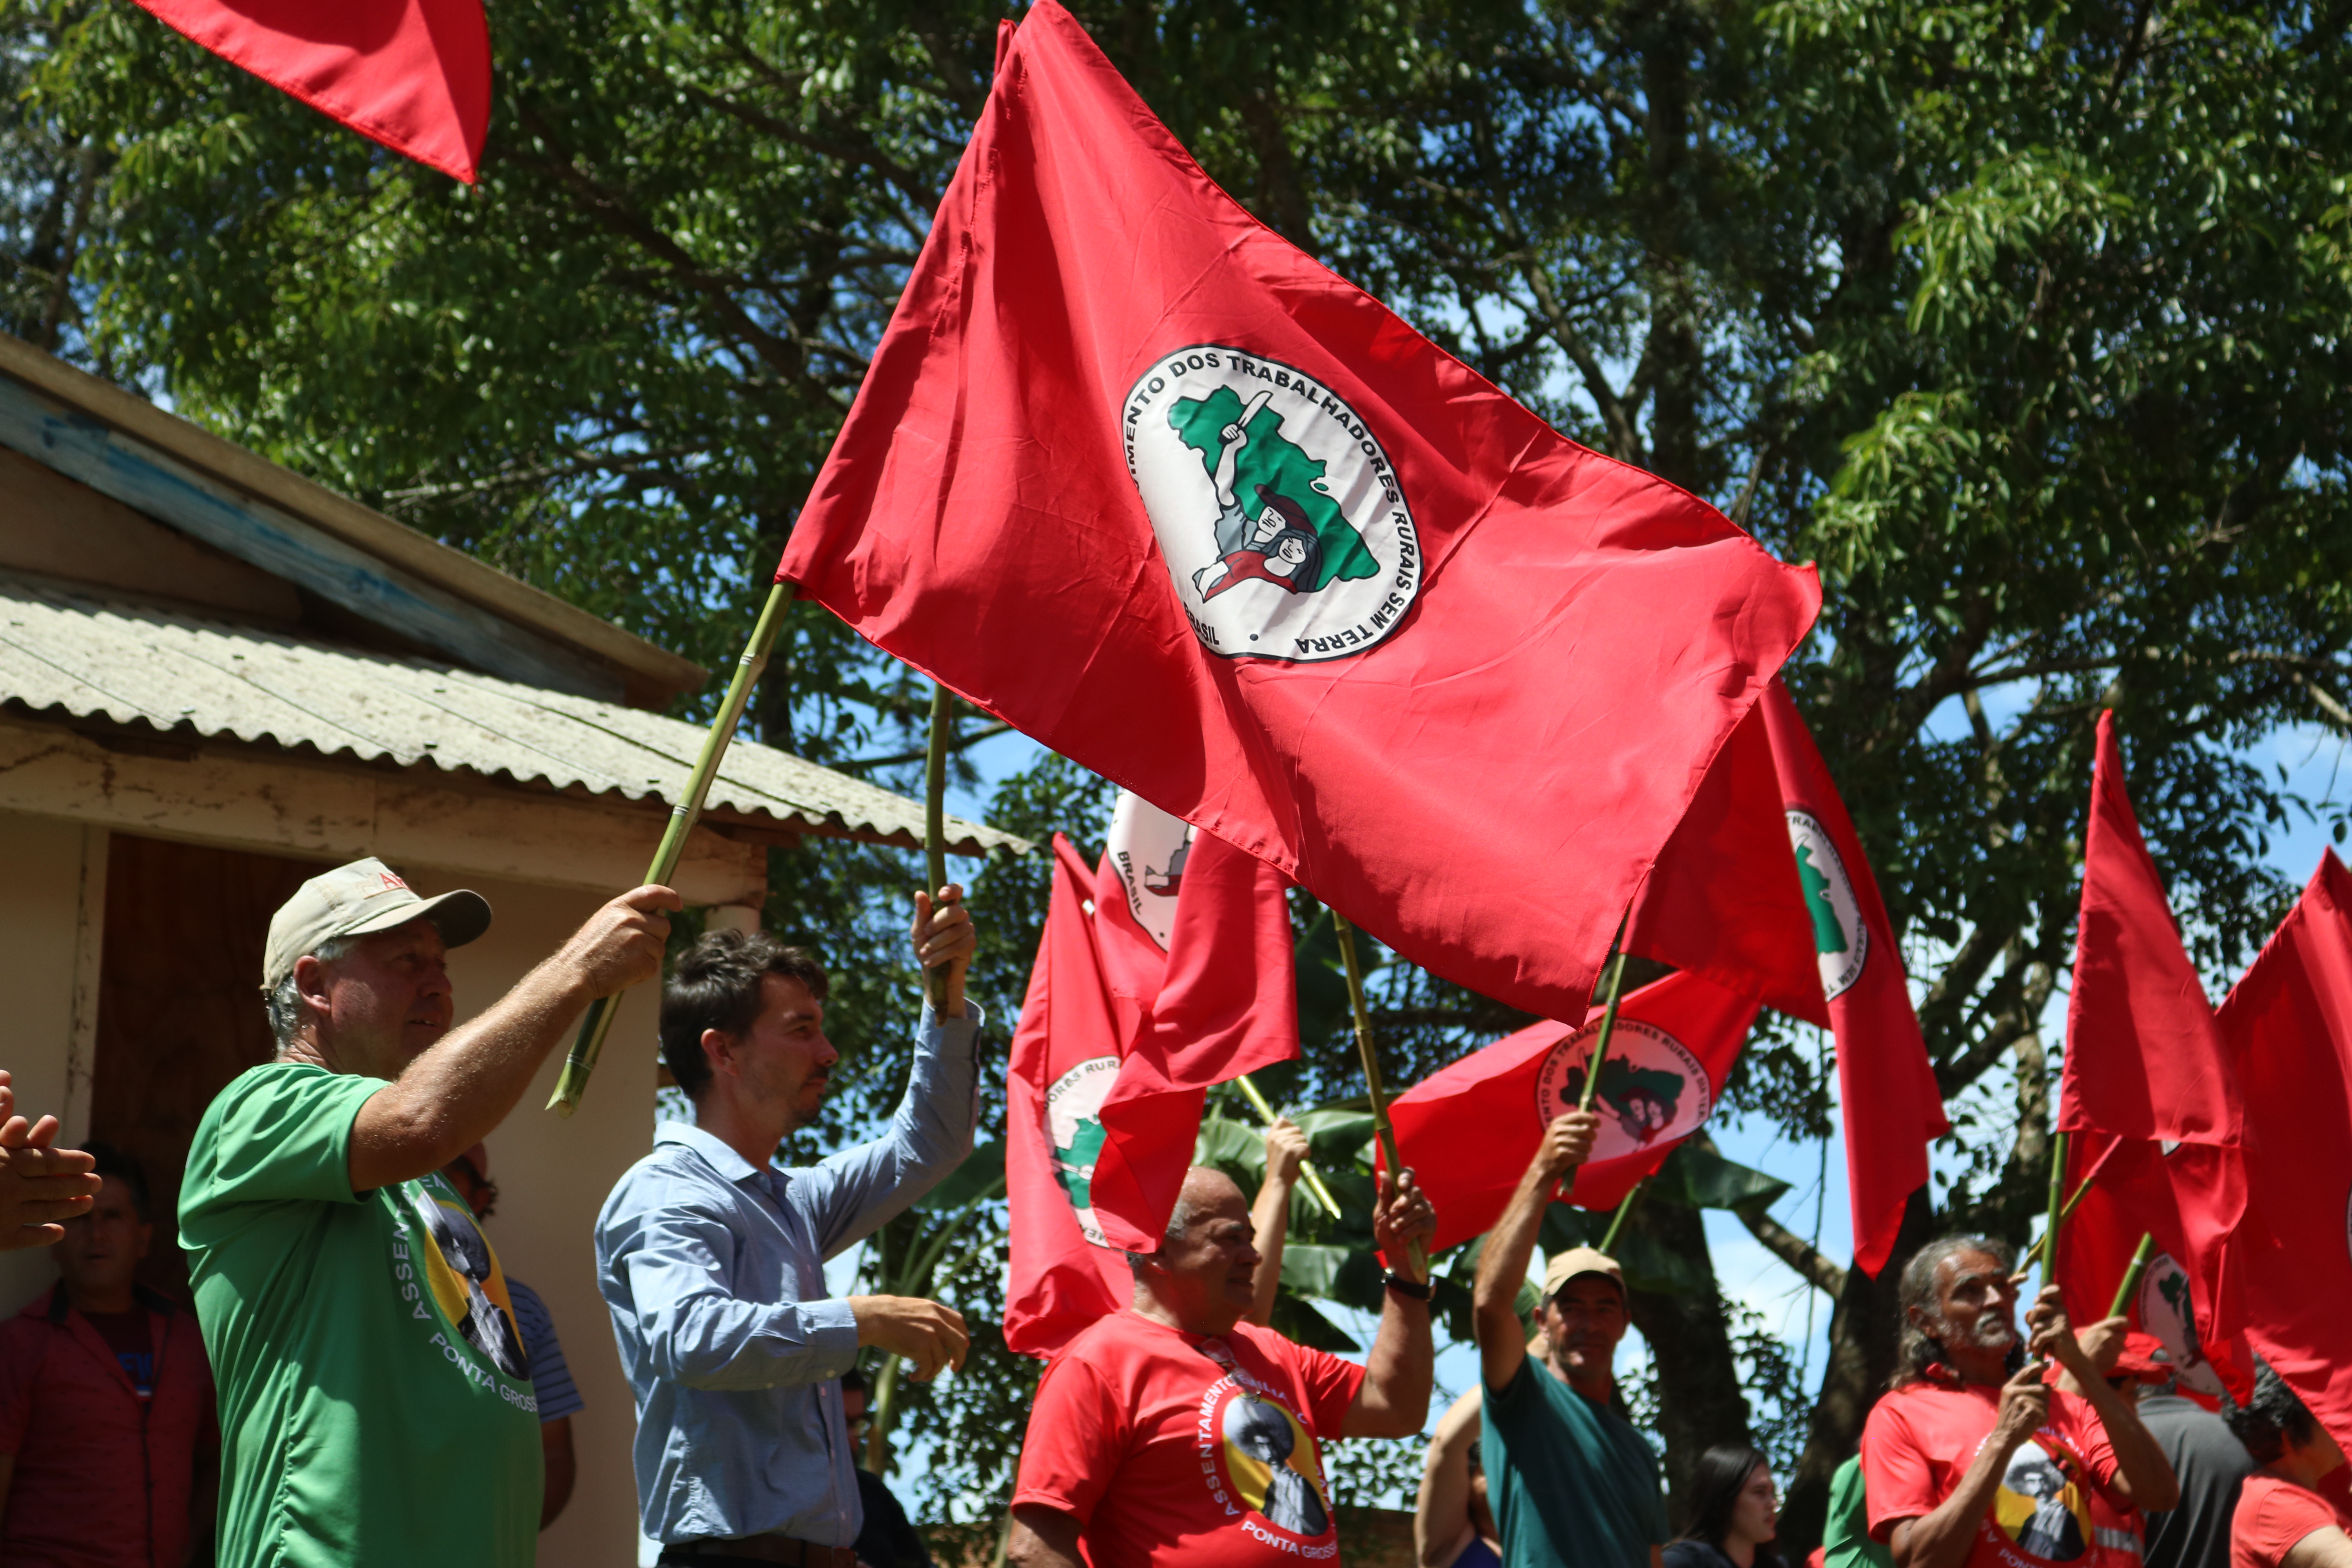 Assentamento da região de Ponta Grossa passa por reforma agrária